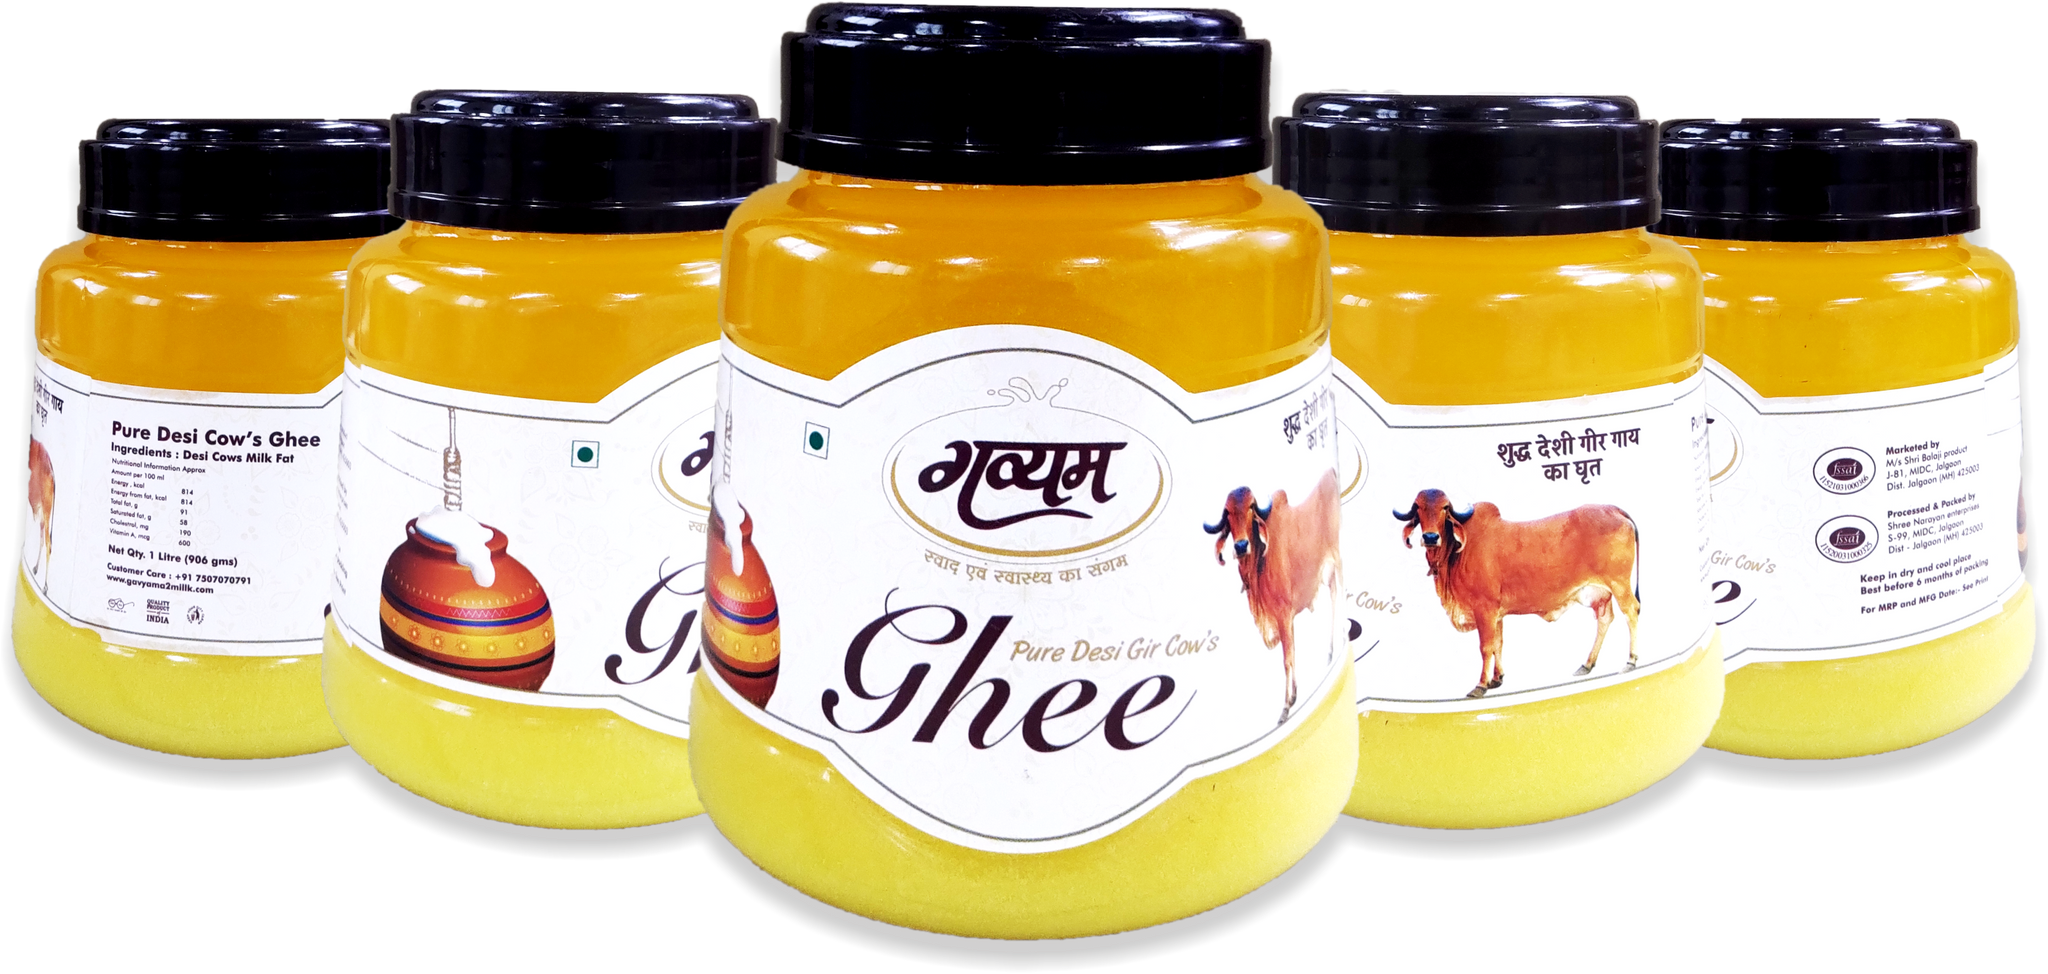 Pure Desi Gir Cow Ghee | 1 LITRE